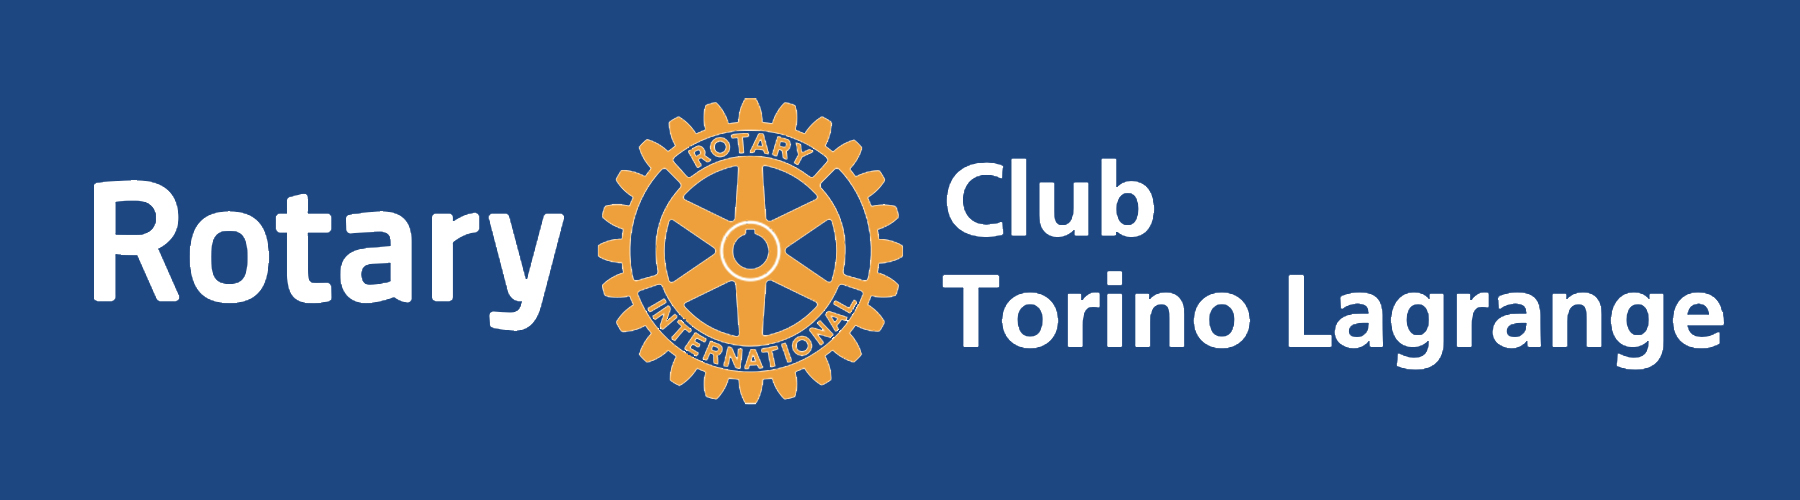 Interclub dedicata alla fondazione Rotary